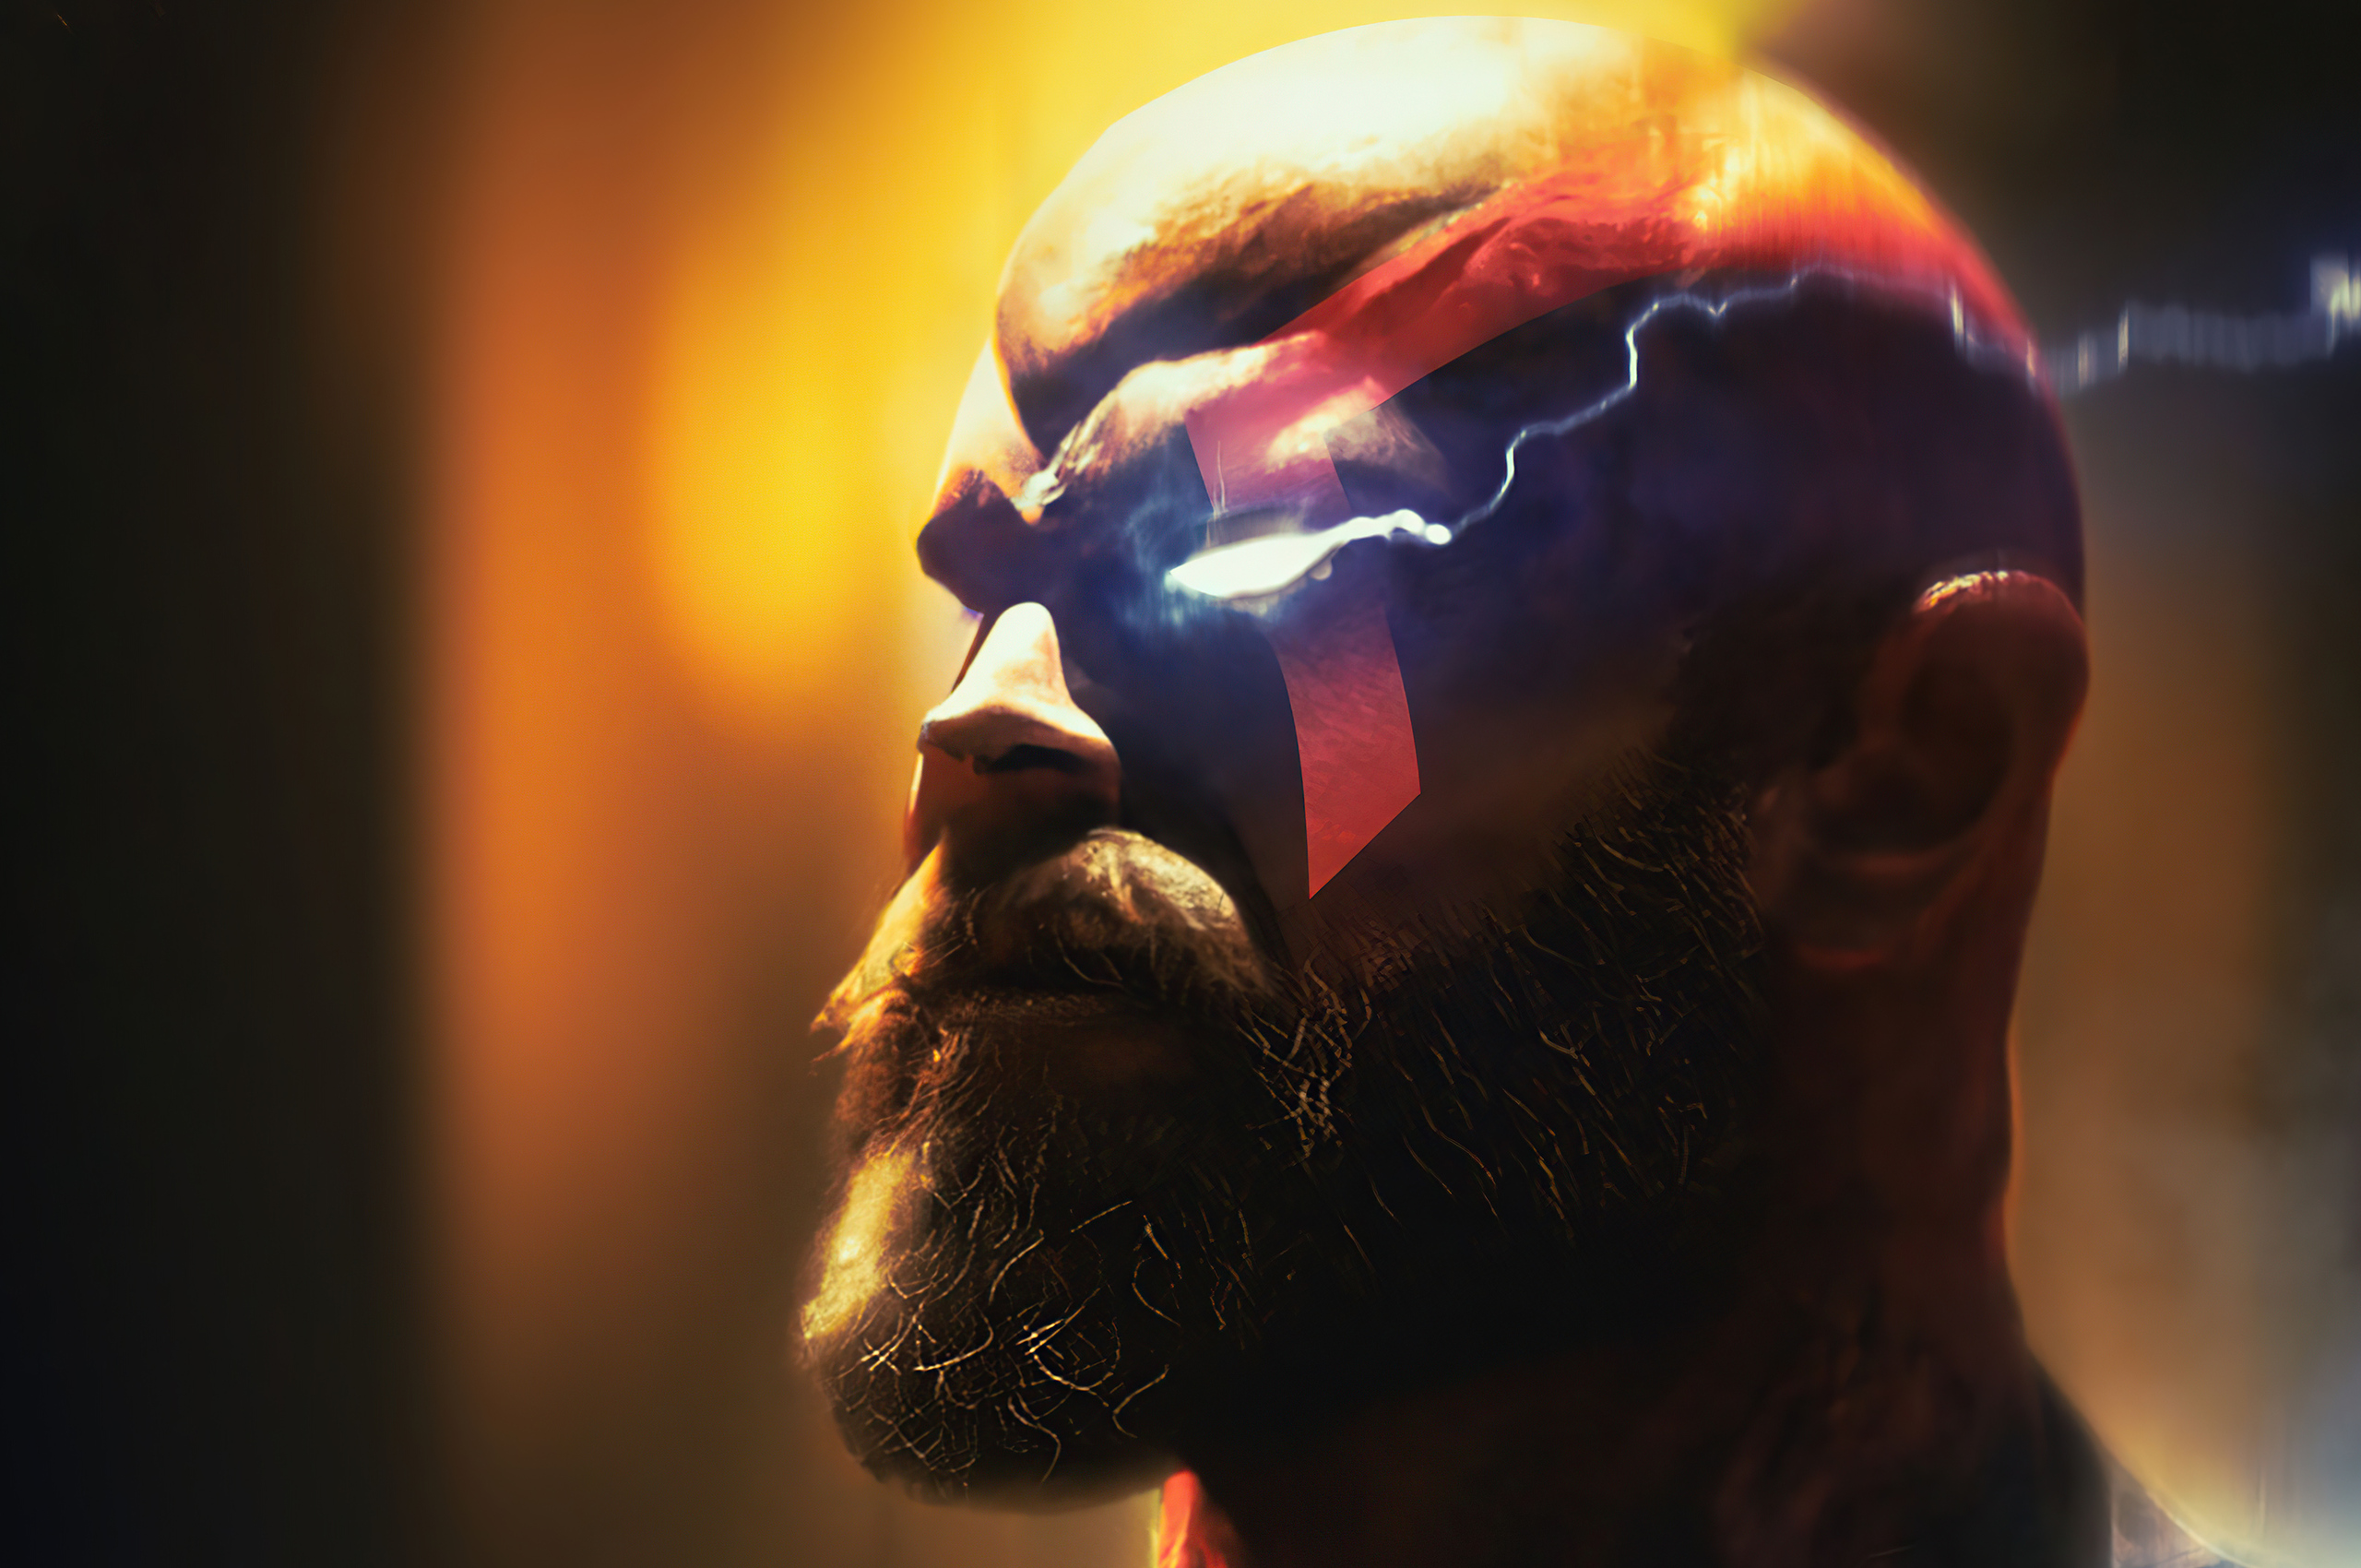 kratos-killing-gods-4q.jpg